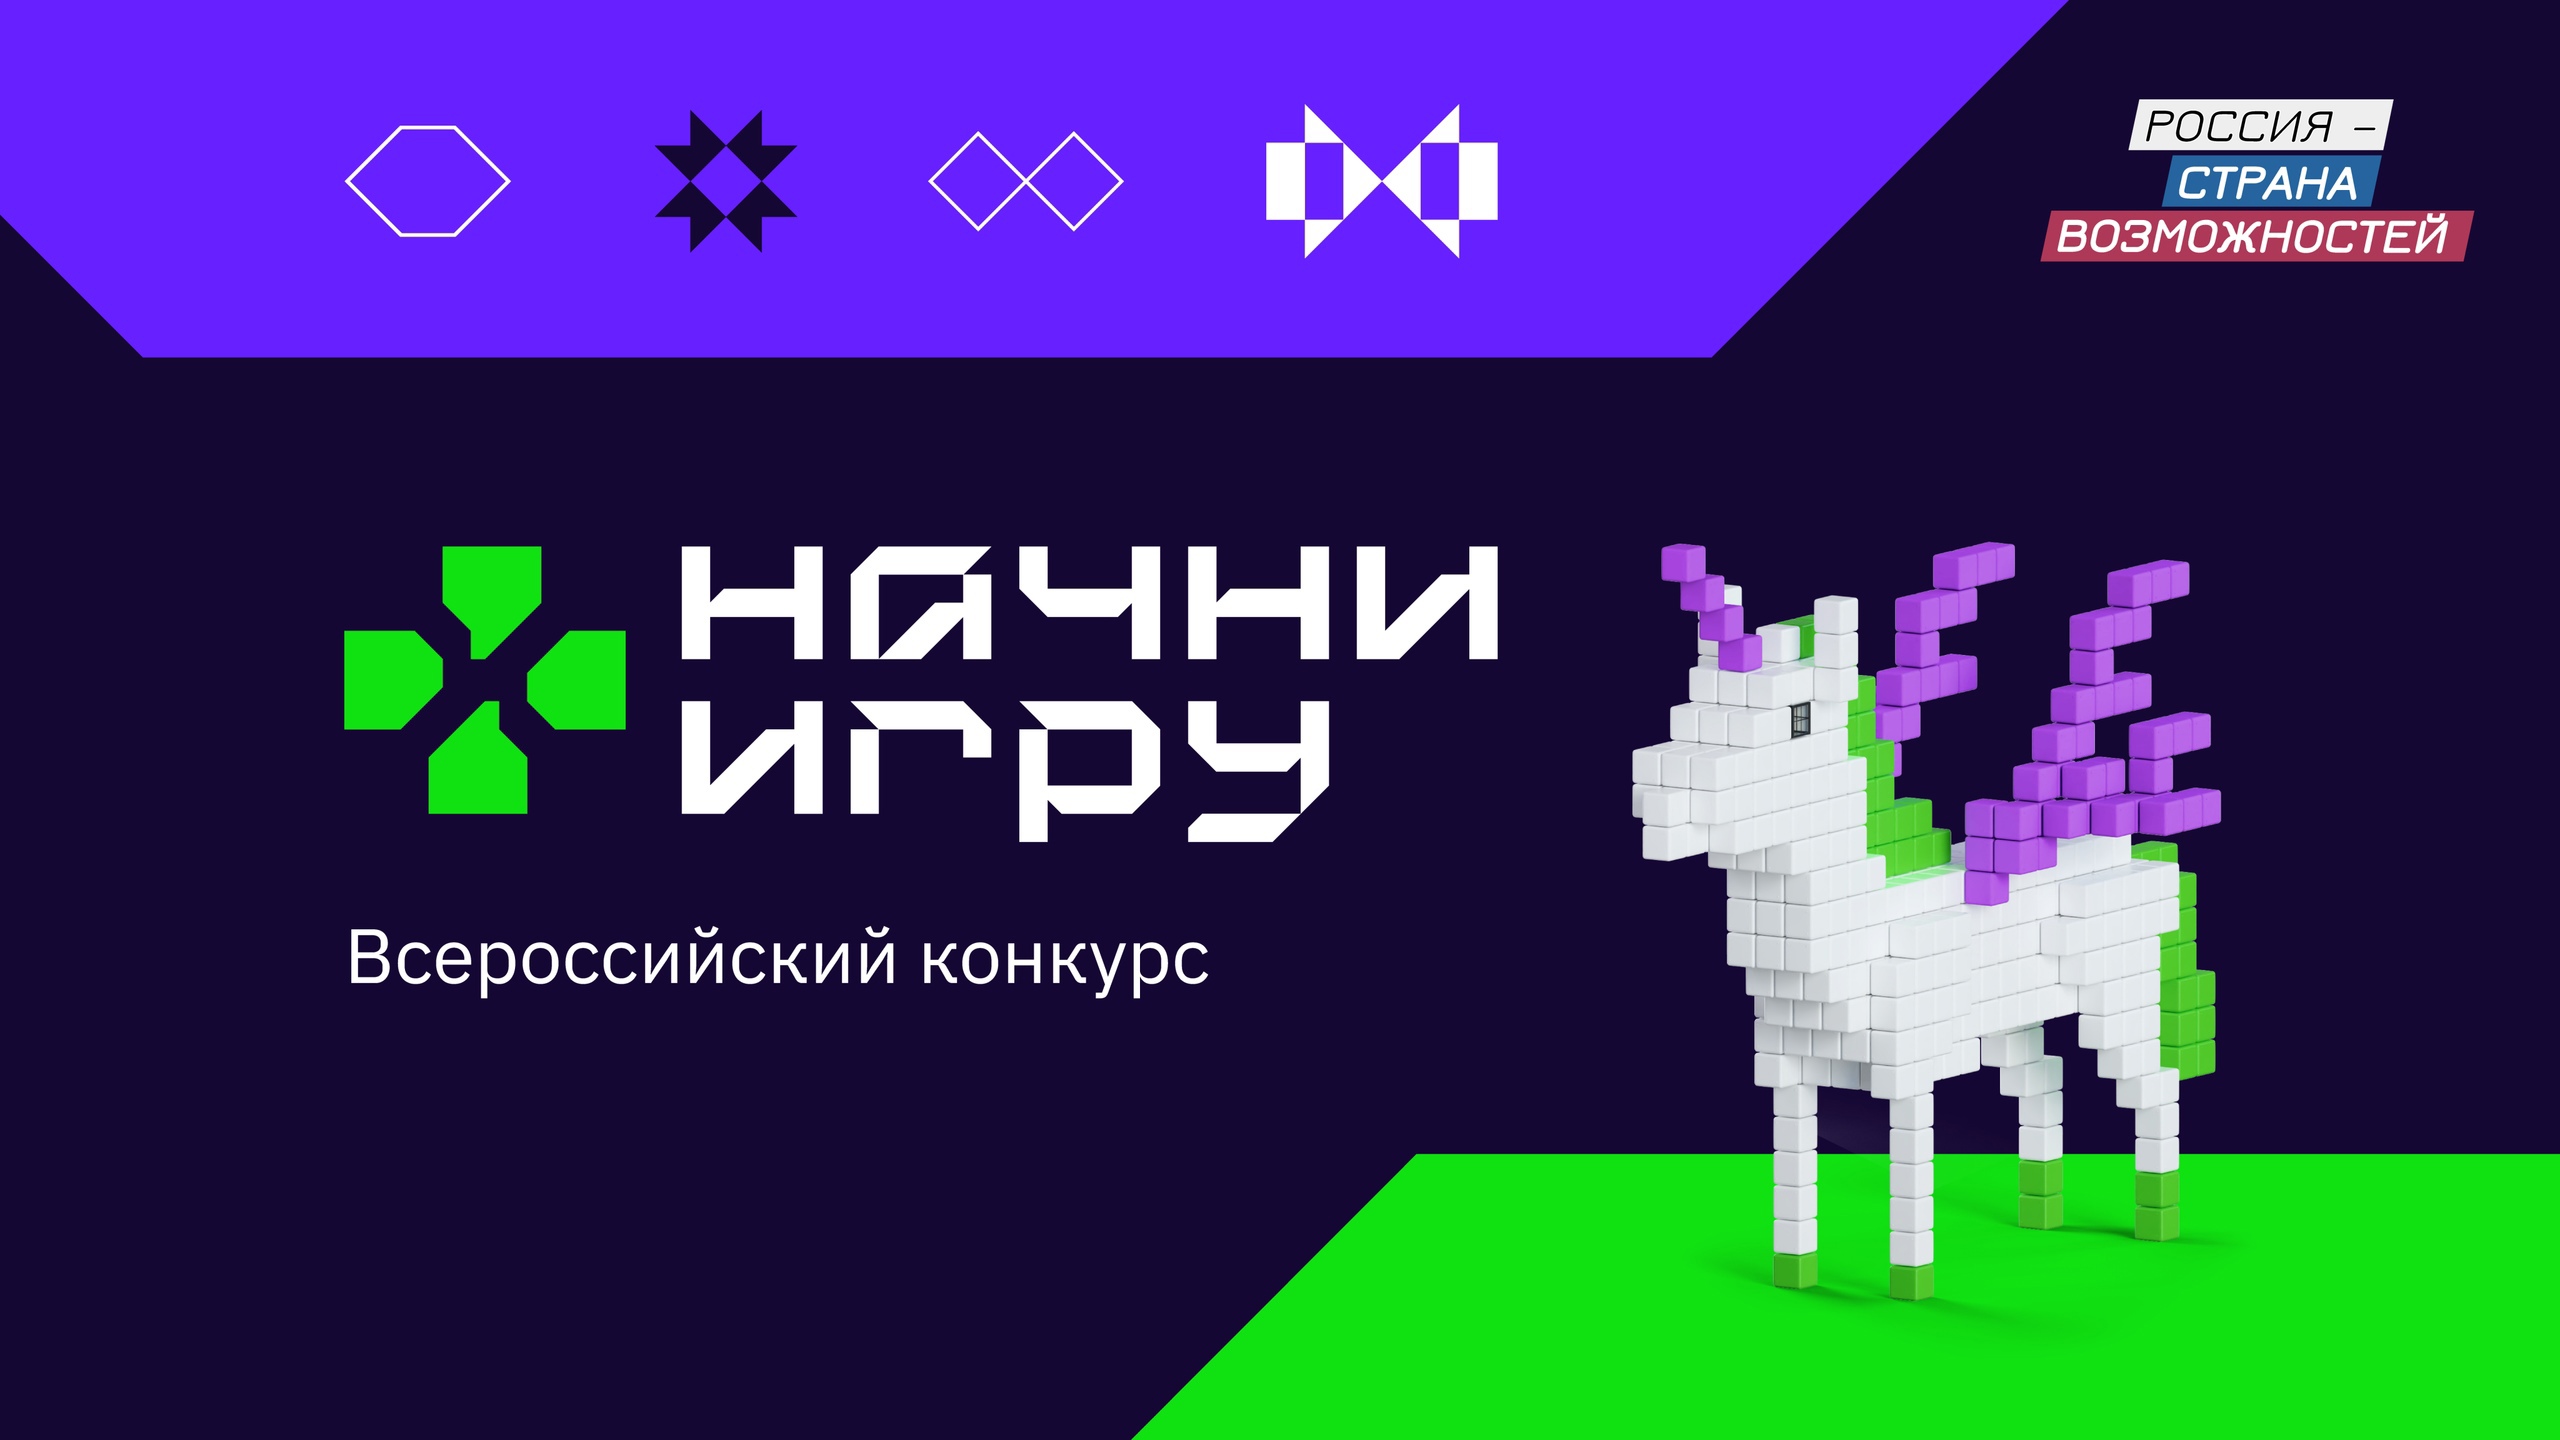 Успейте поучаствовать во Всероссийском конкурсе «Начни игру».